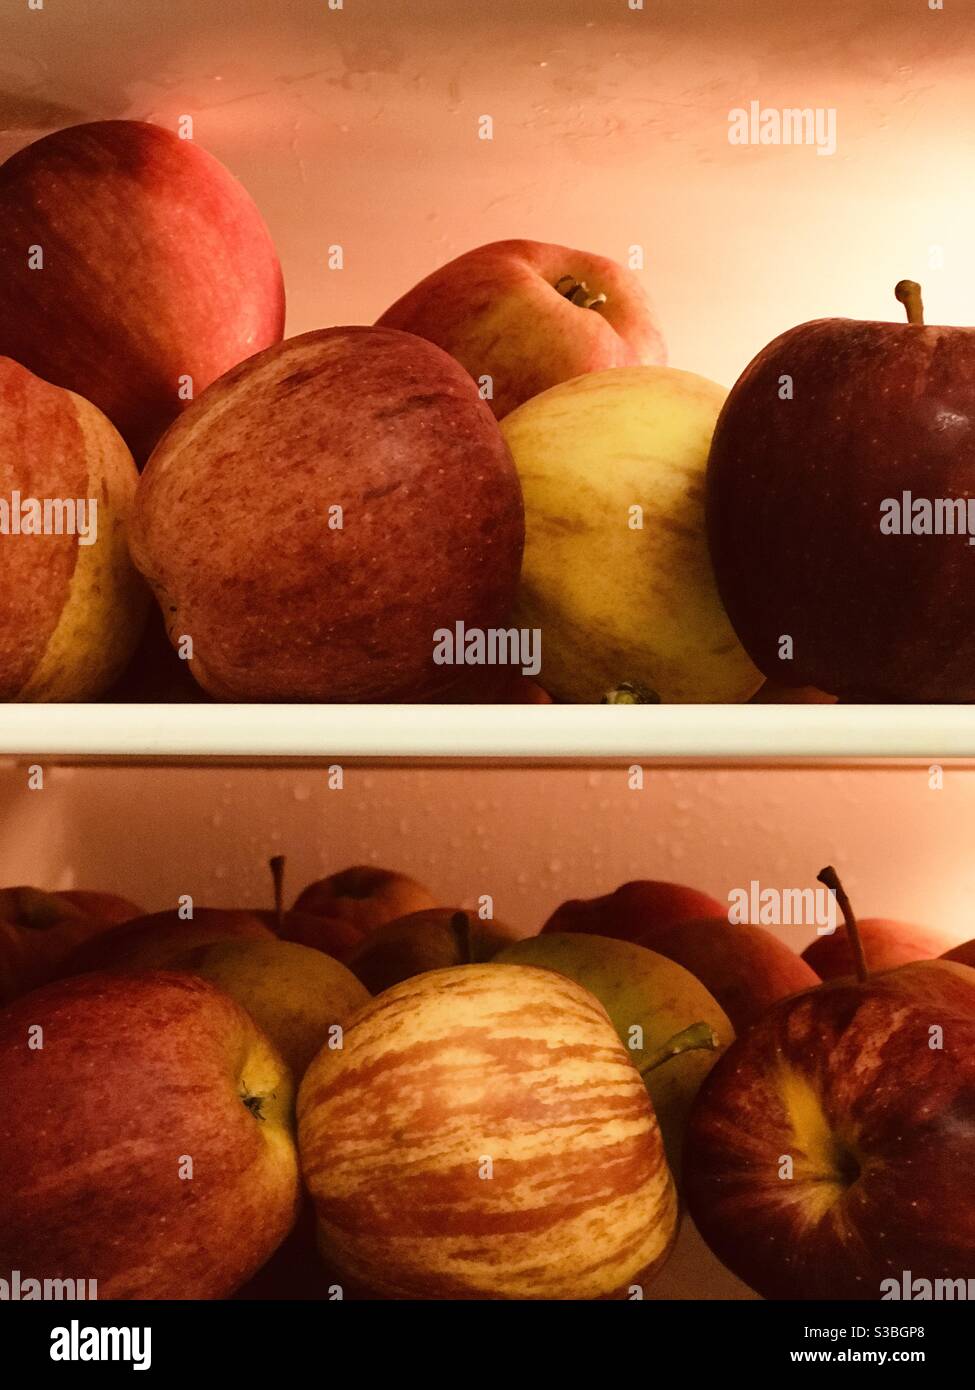 fresh apples on fridge shelves Stock Photo